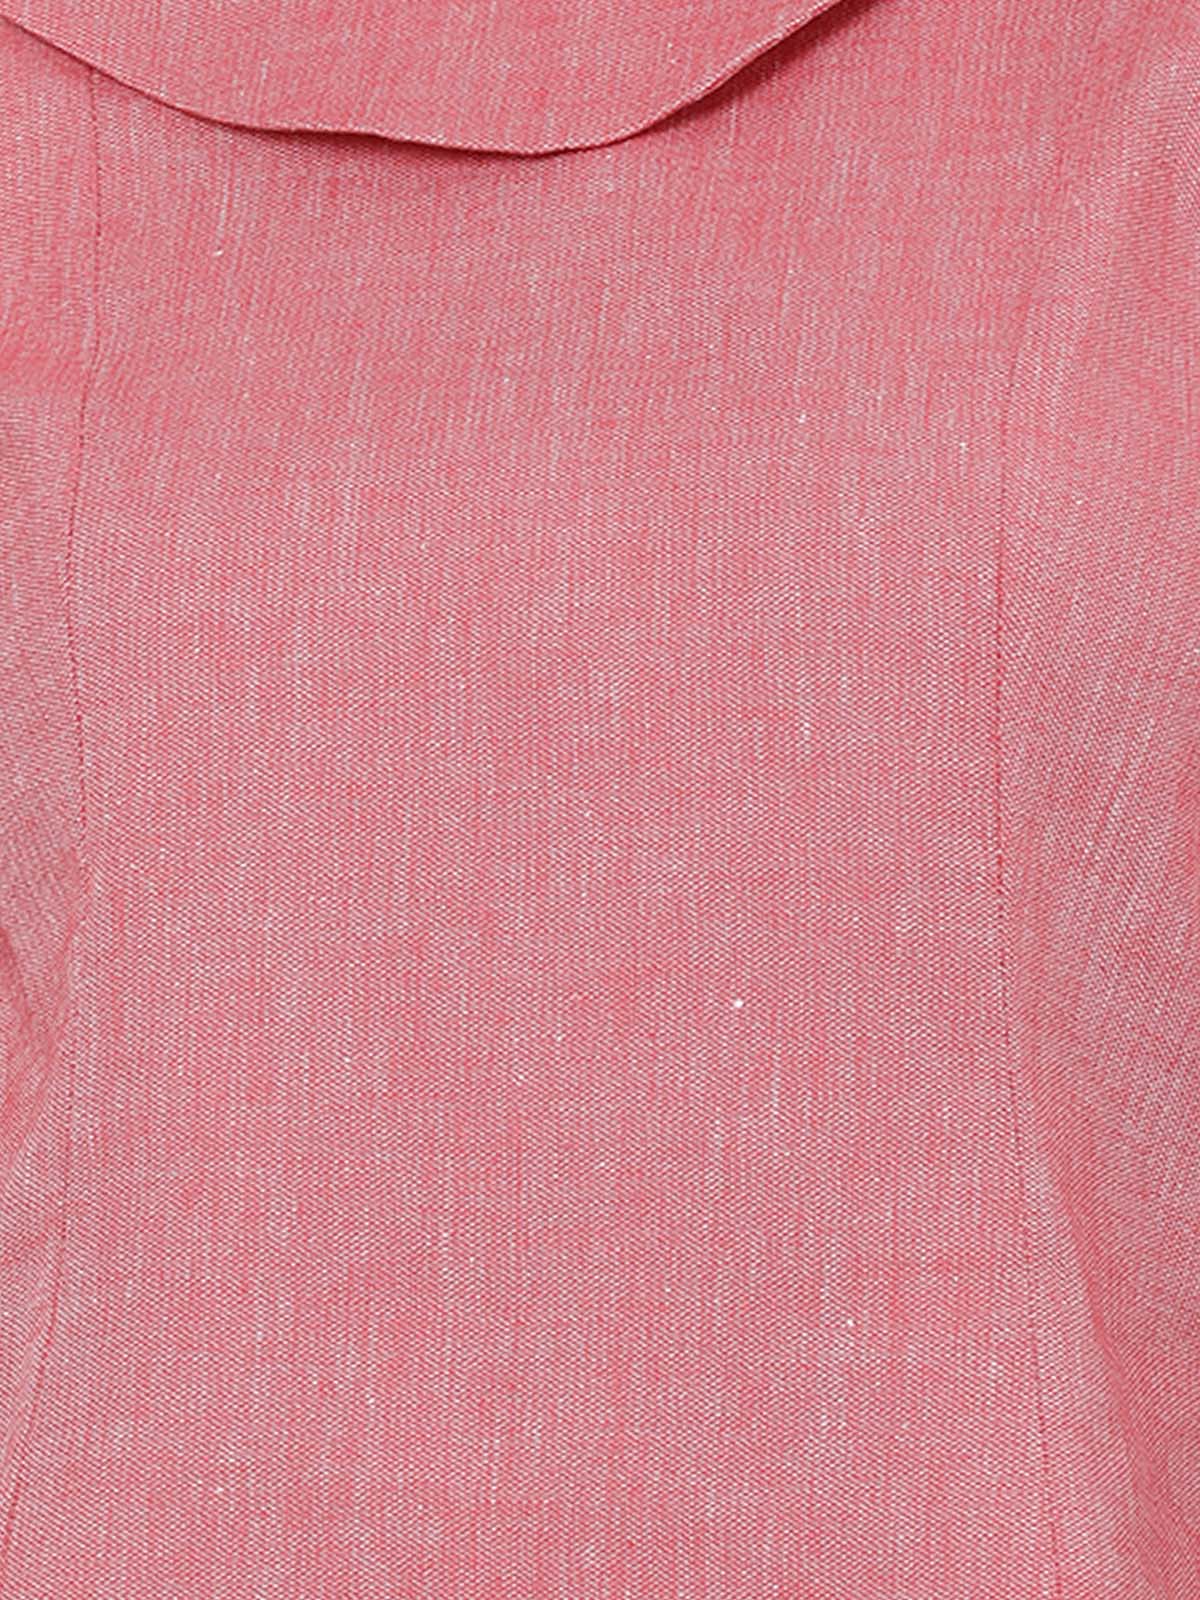 Charming Pink  Designer Collar Crop Top 